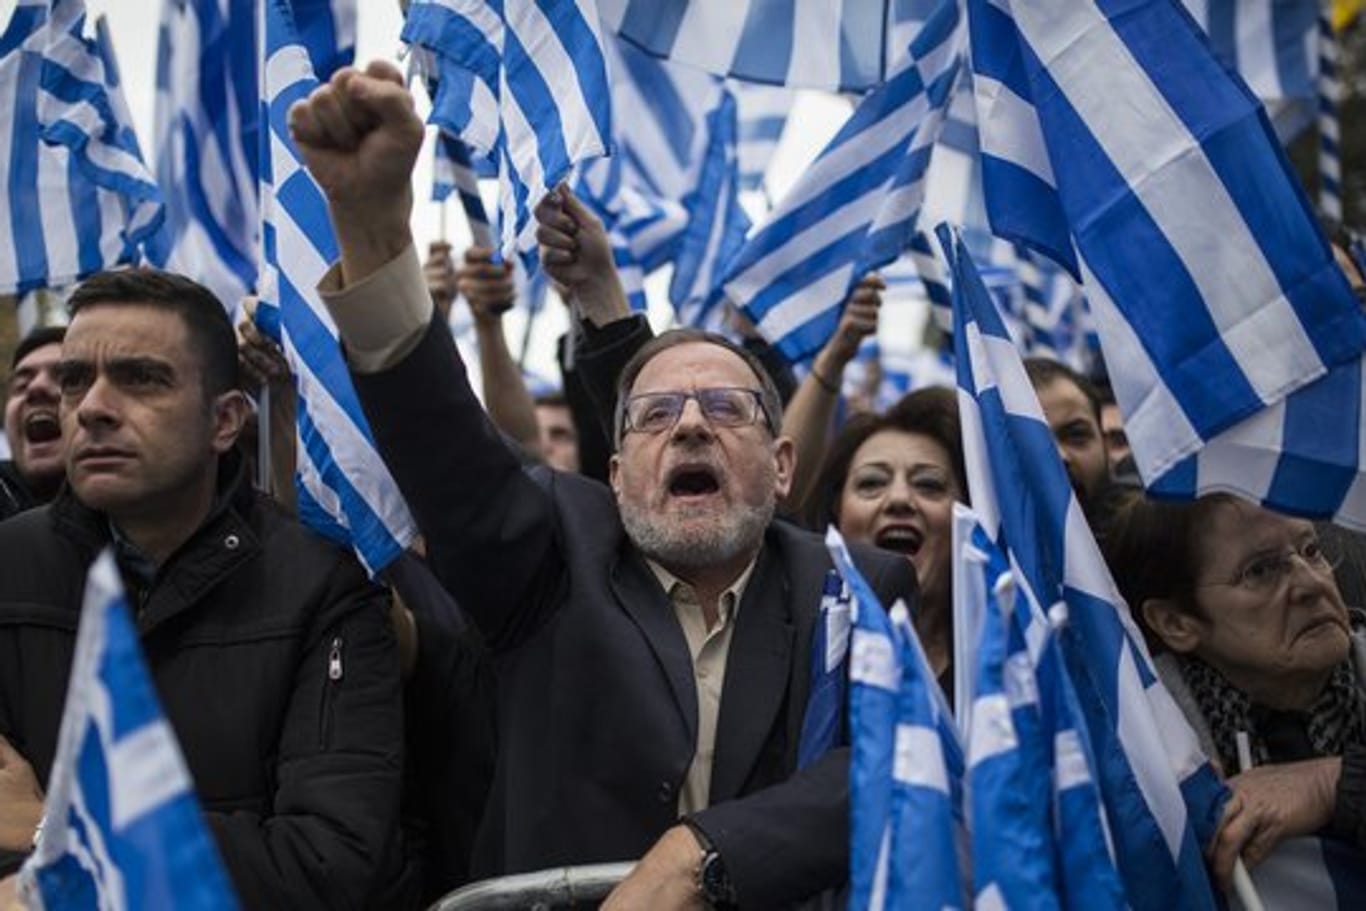 Demonstranten versammeln sich vor dem griechischen Parlament, halten Fahnen und Plakate hoch und rufen dabei Parolen.